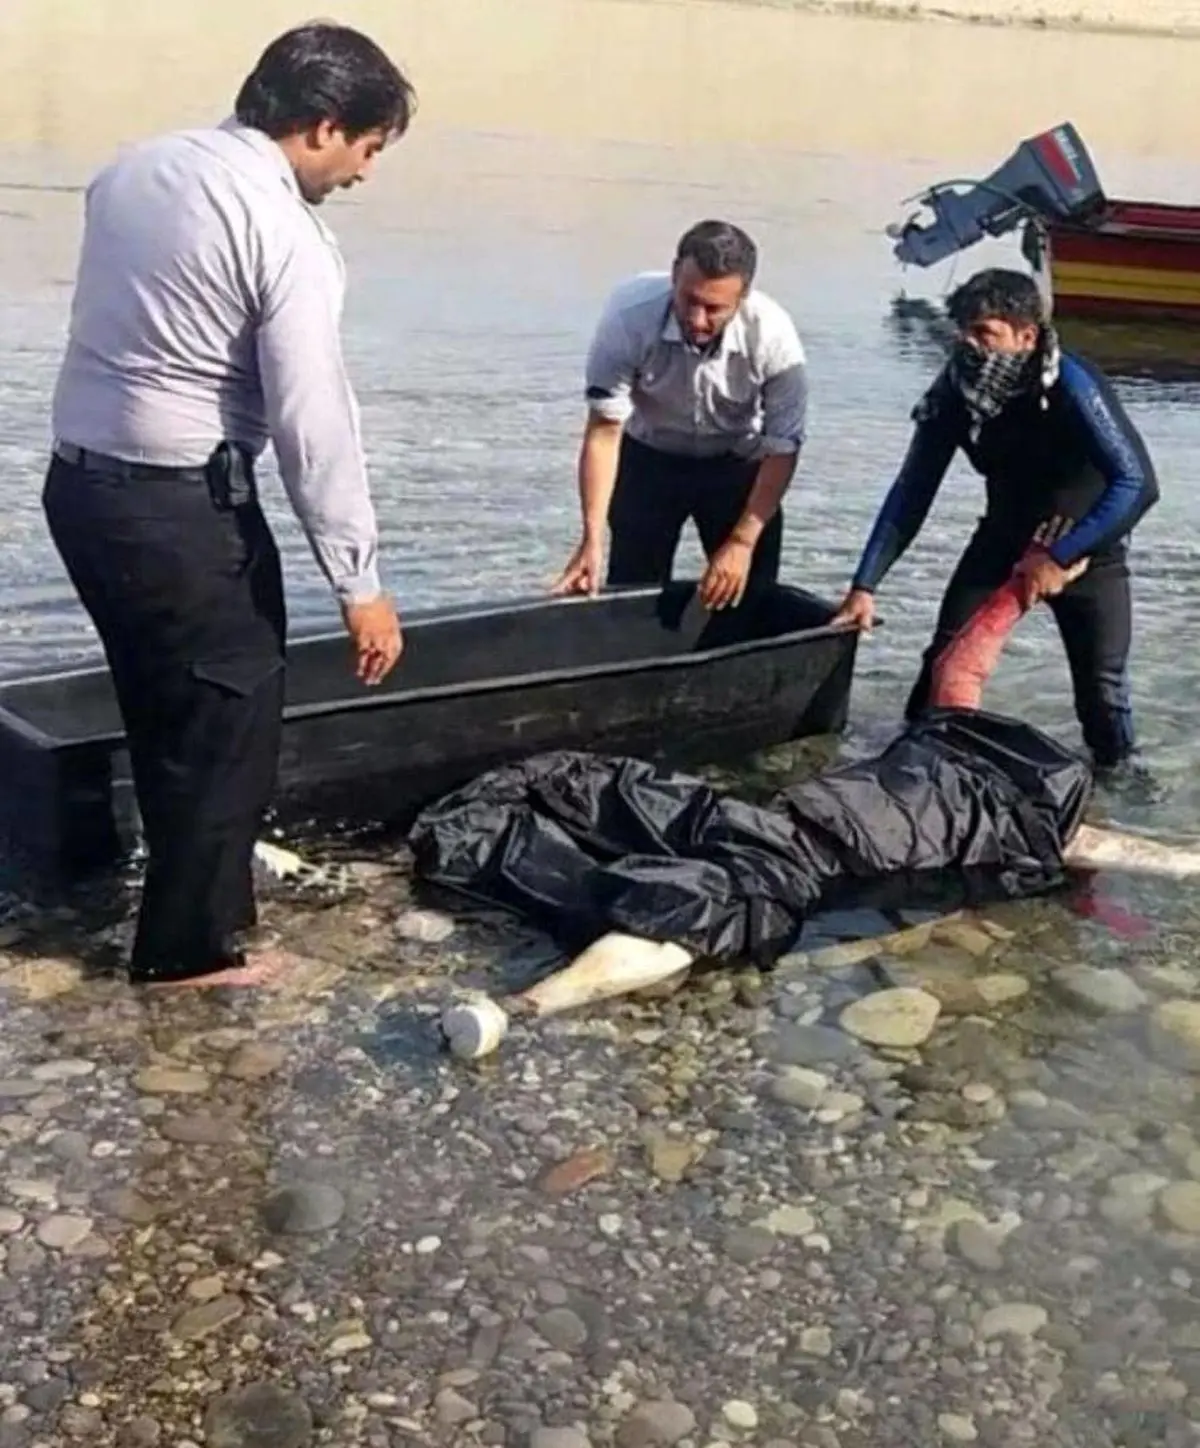 پیدا شدن جسد مرد گمشده گیلانی در رودخانه + عکس 